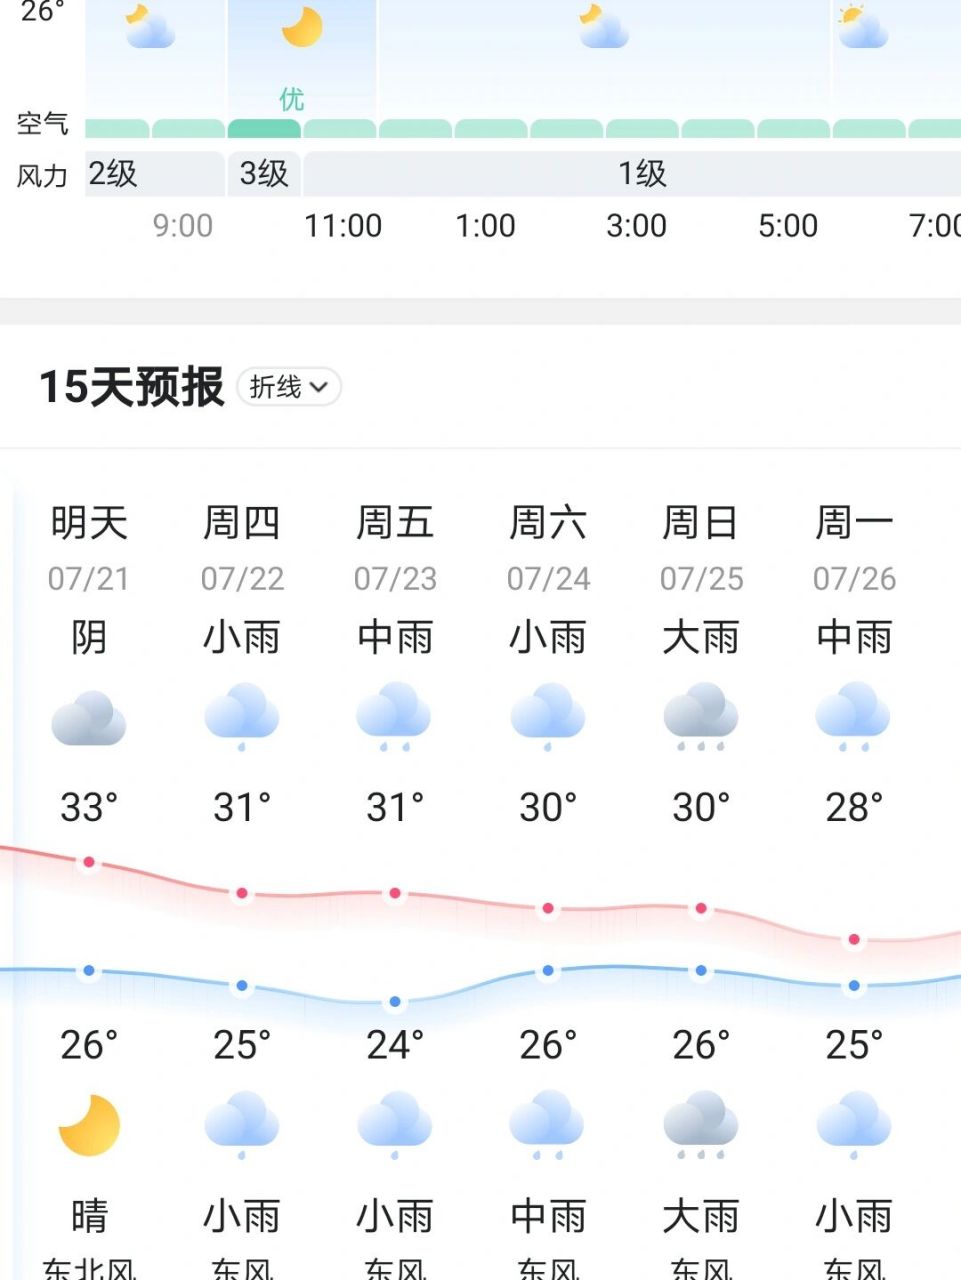 上海天气 救命啊上海天气预报一般准不准啊,26号大连飞上海,这还能飞